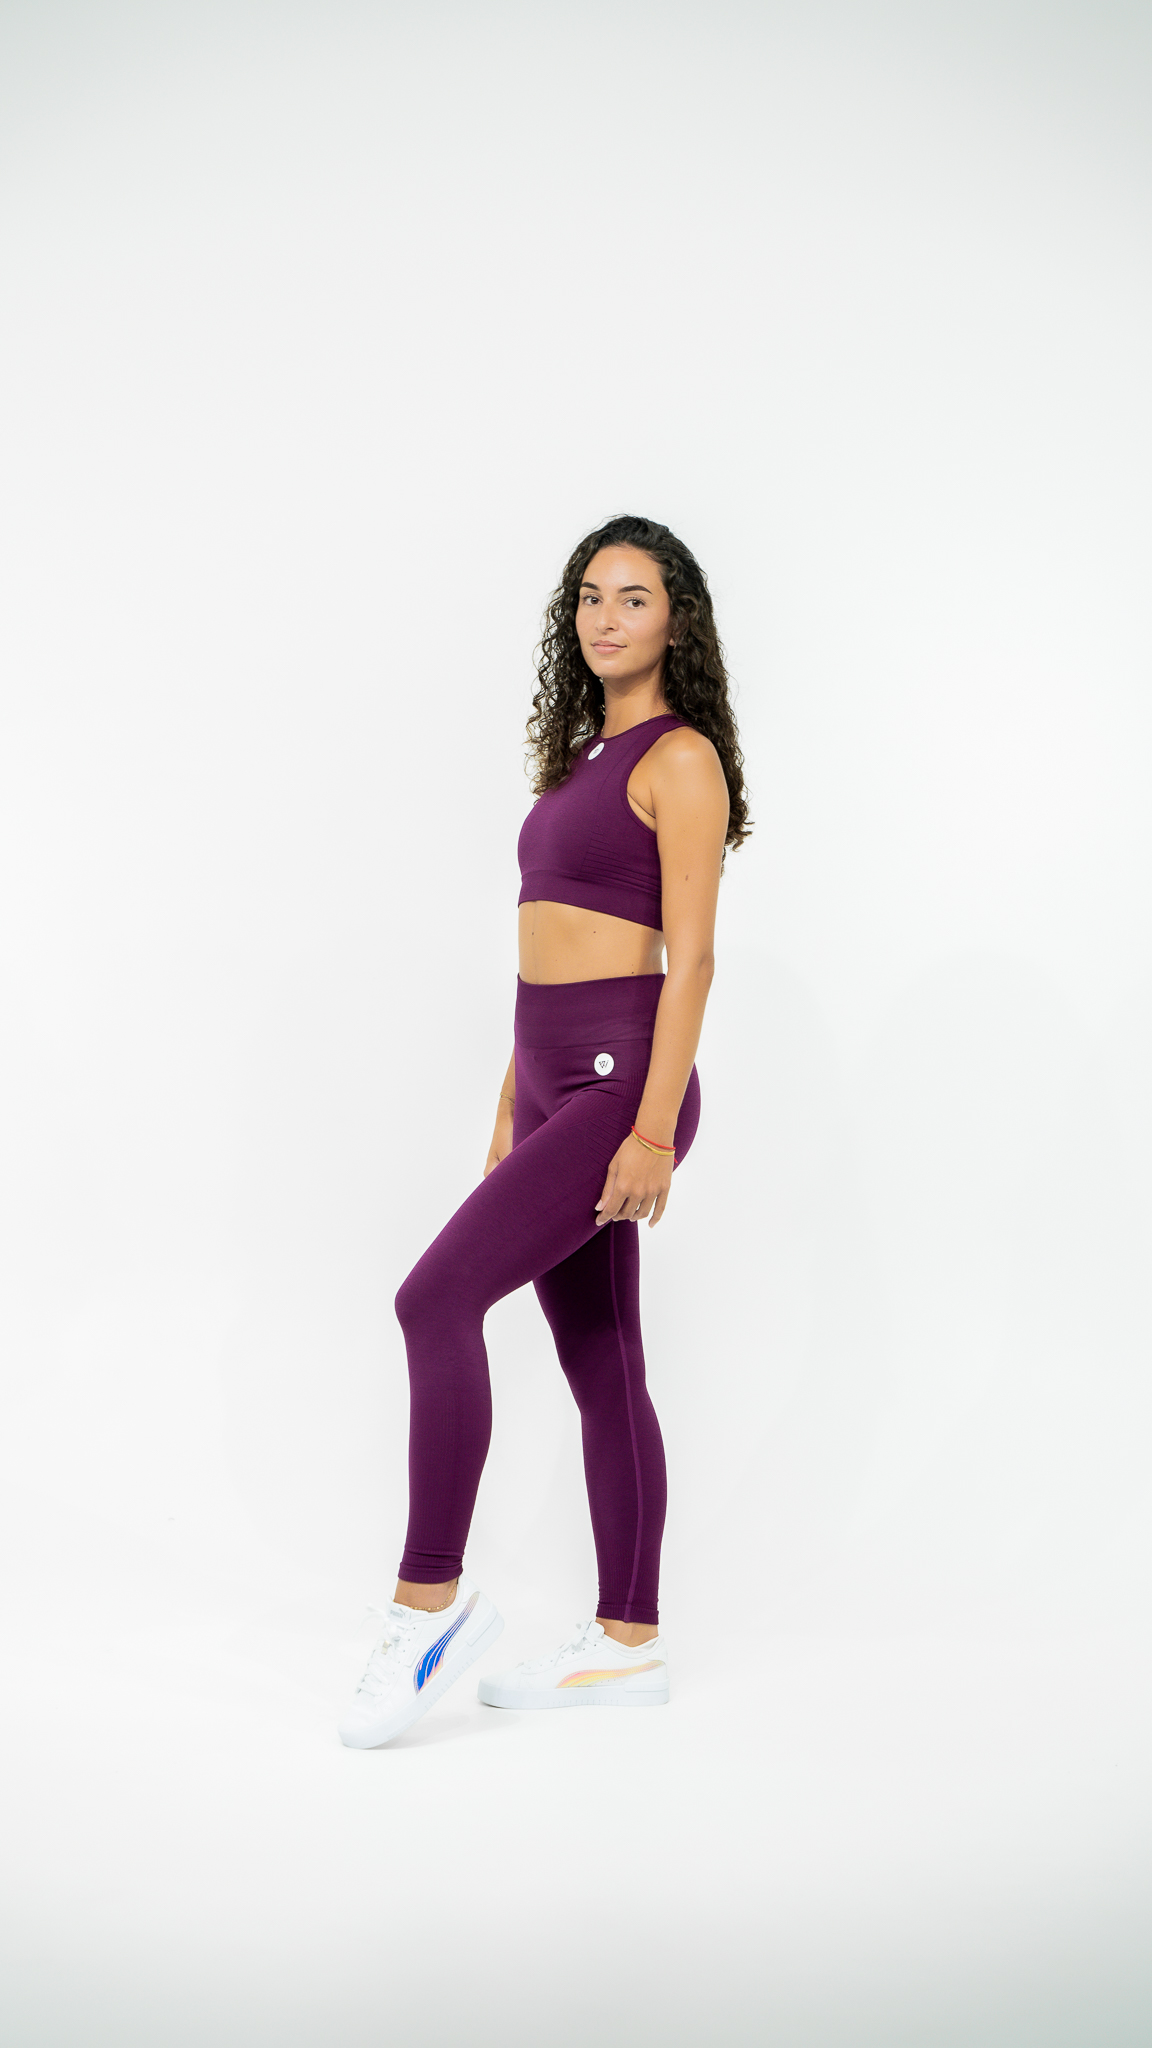 https://fwimindft.com/wp-content/uploads/2016/07/Ensemble-Yoga-fitness-legging-violet.jpg